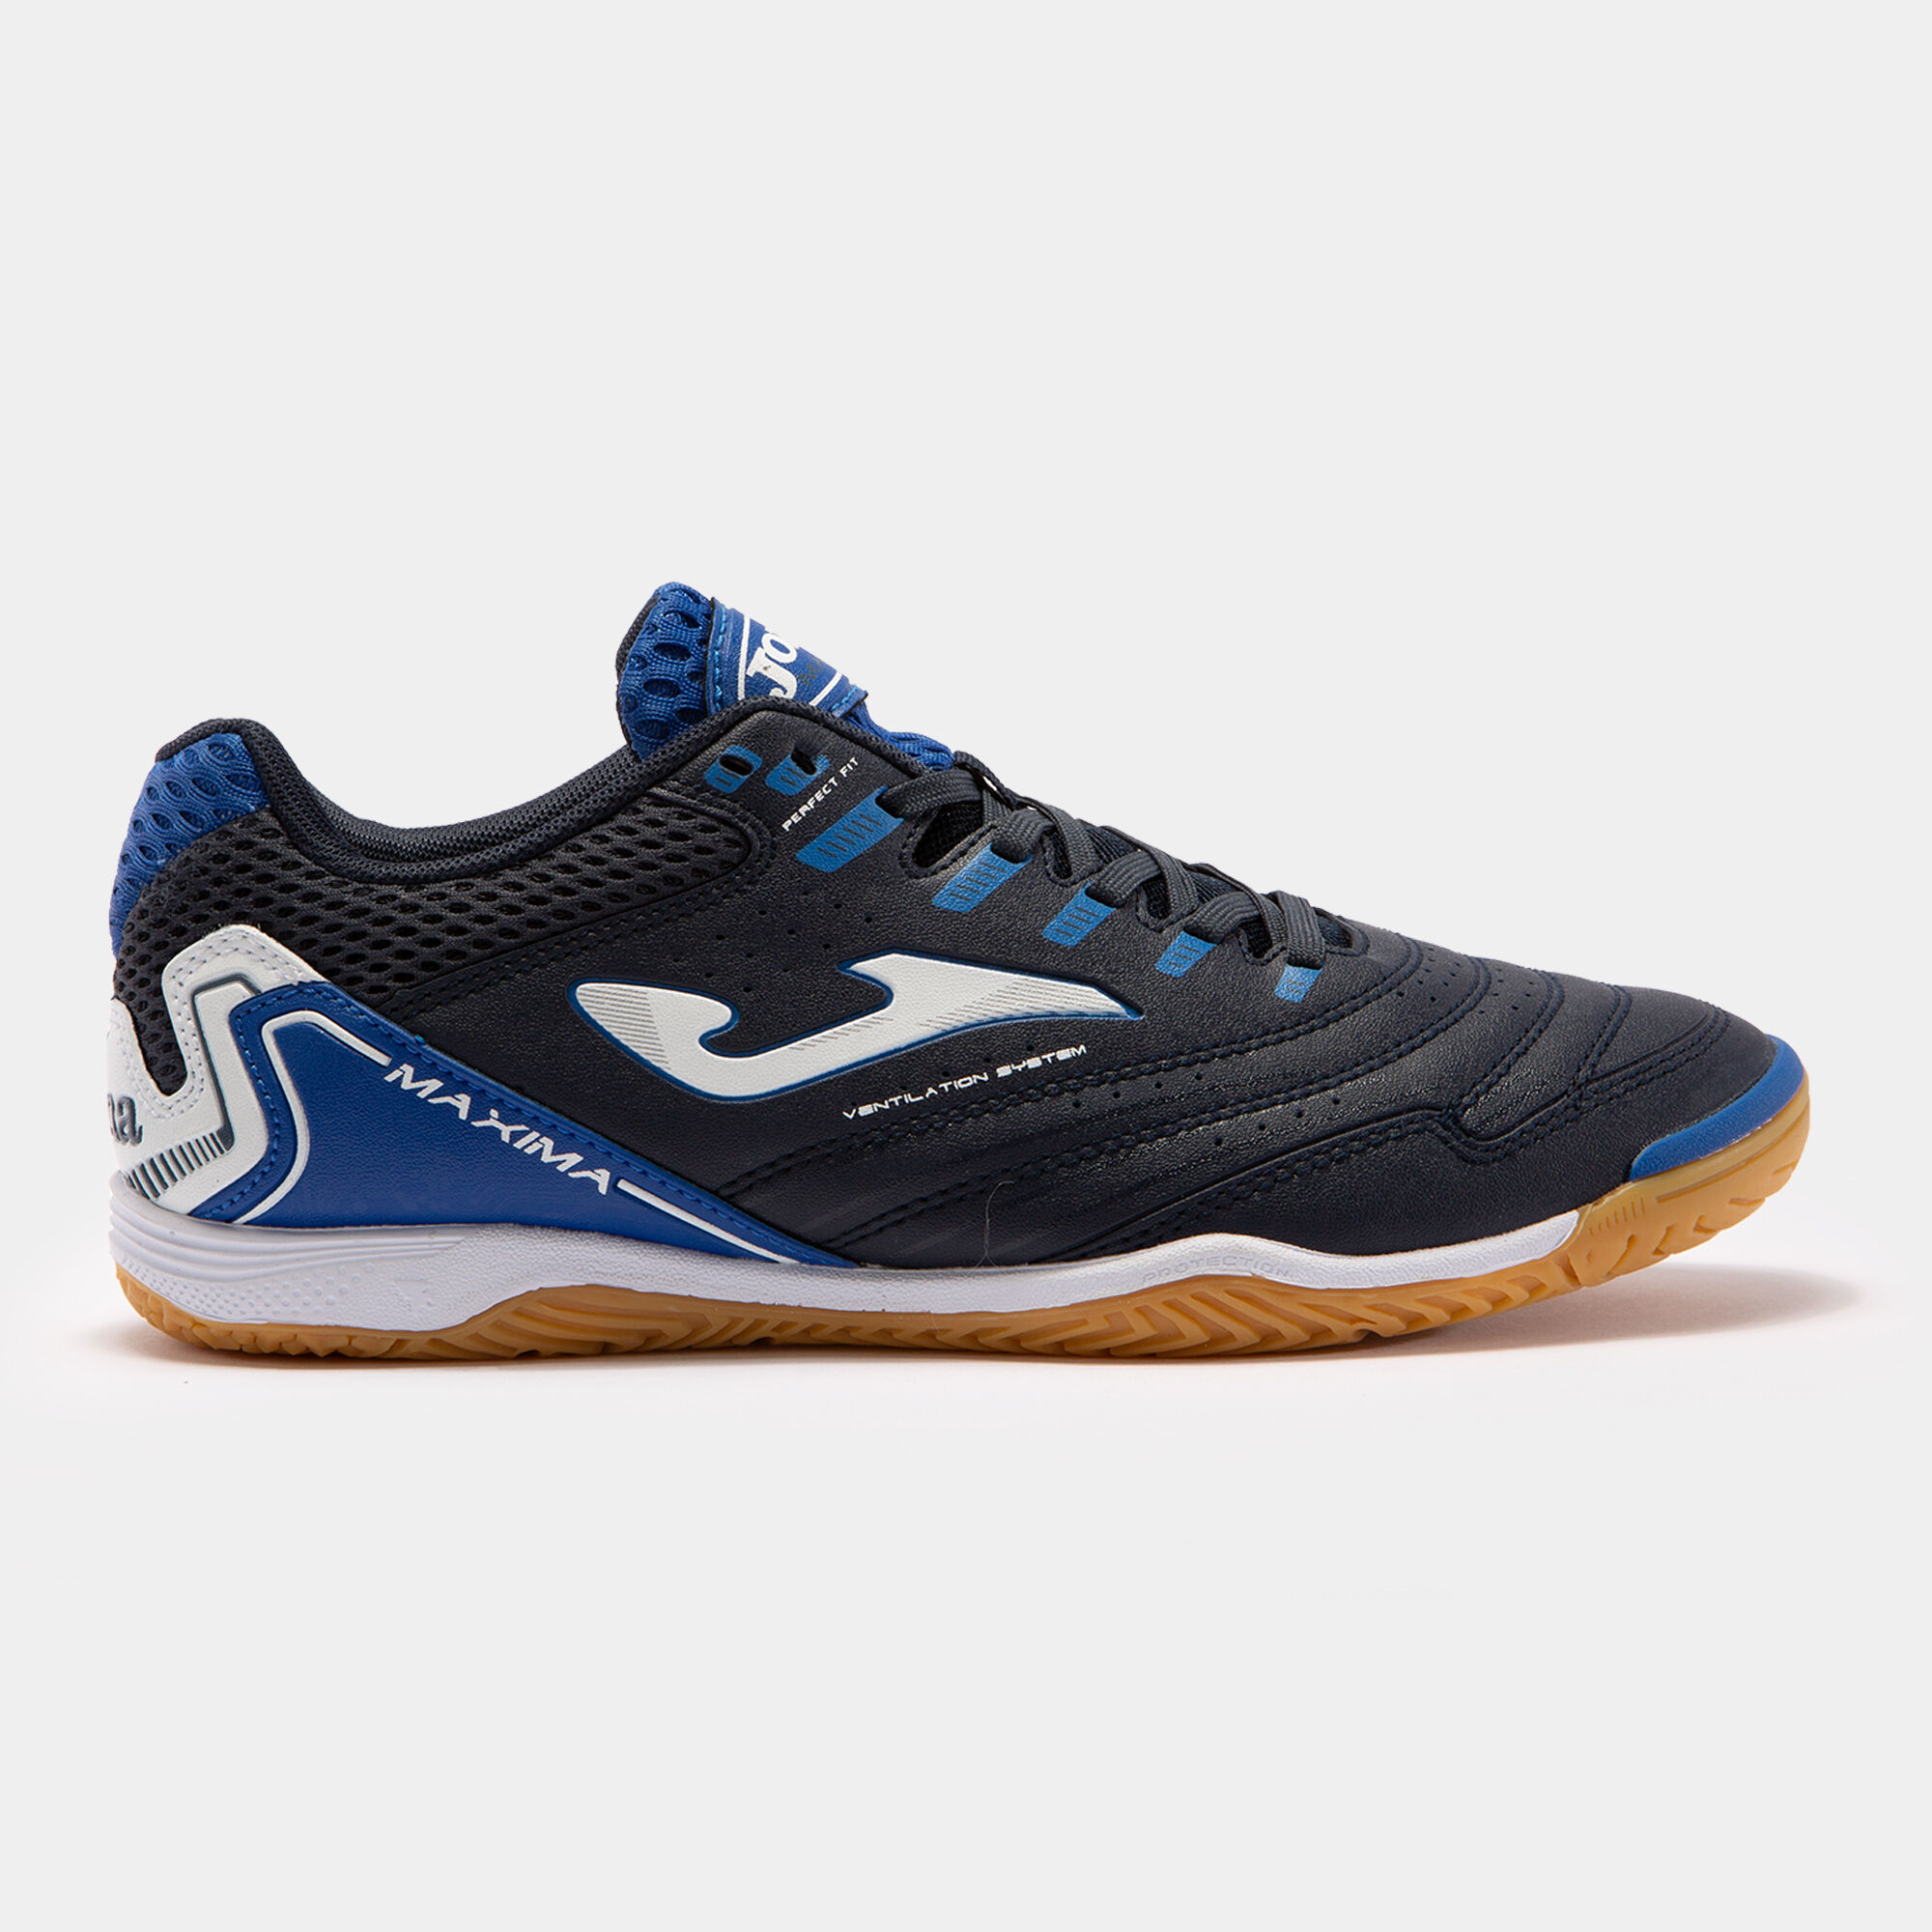 Chaussures futsal Maxima 21 indoor bleu marine